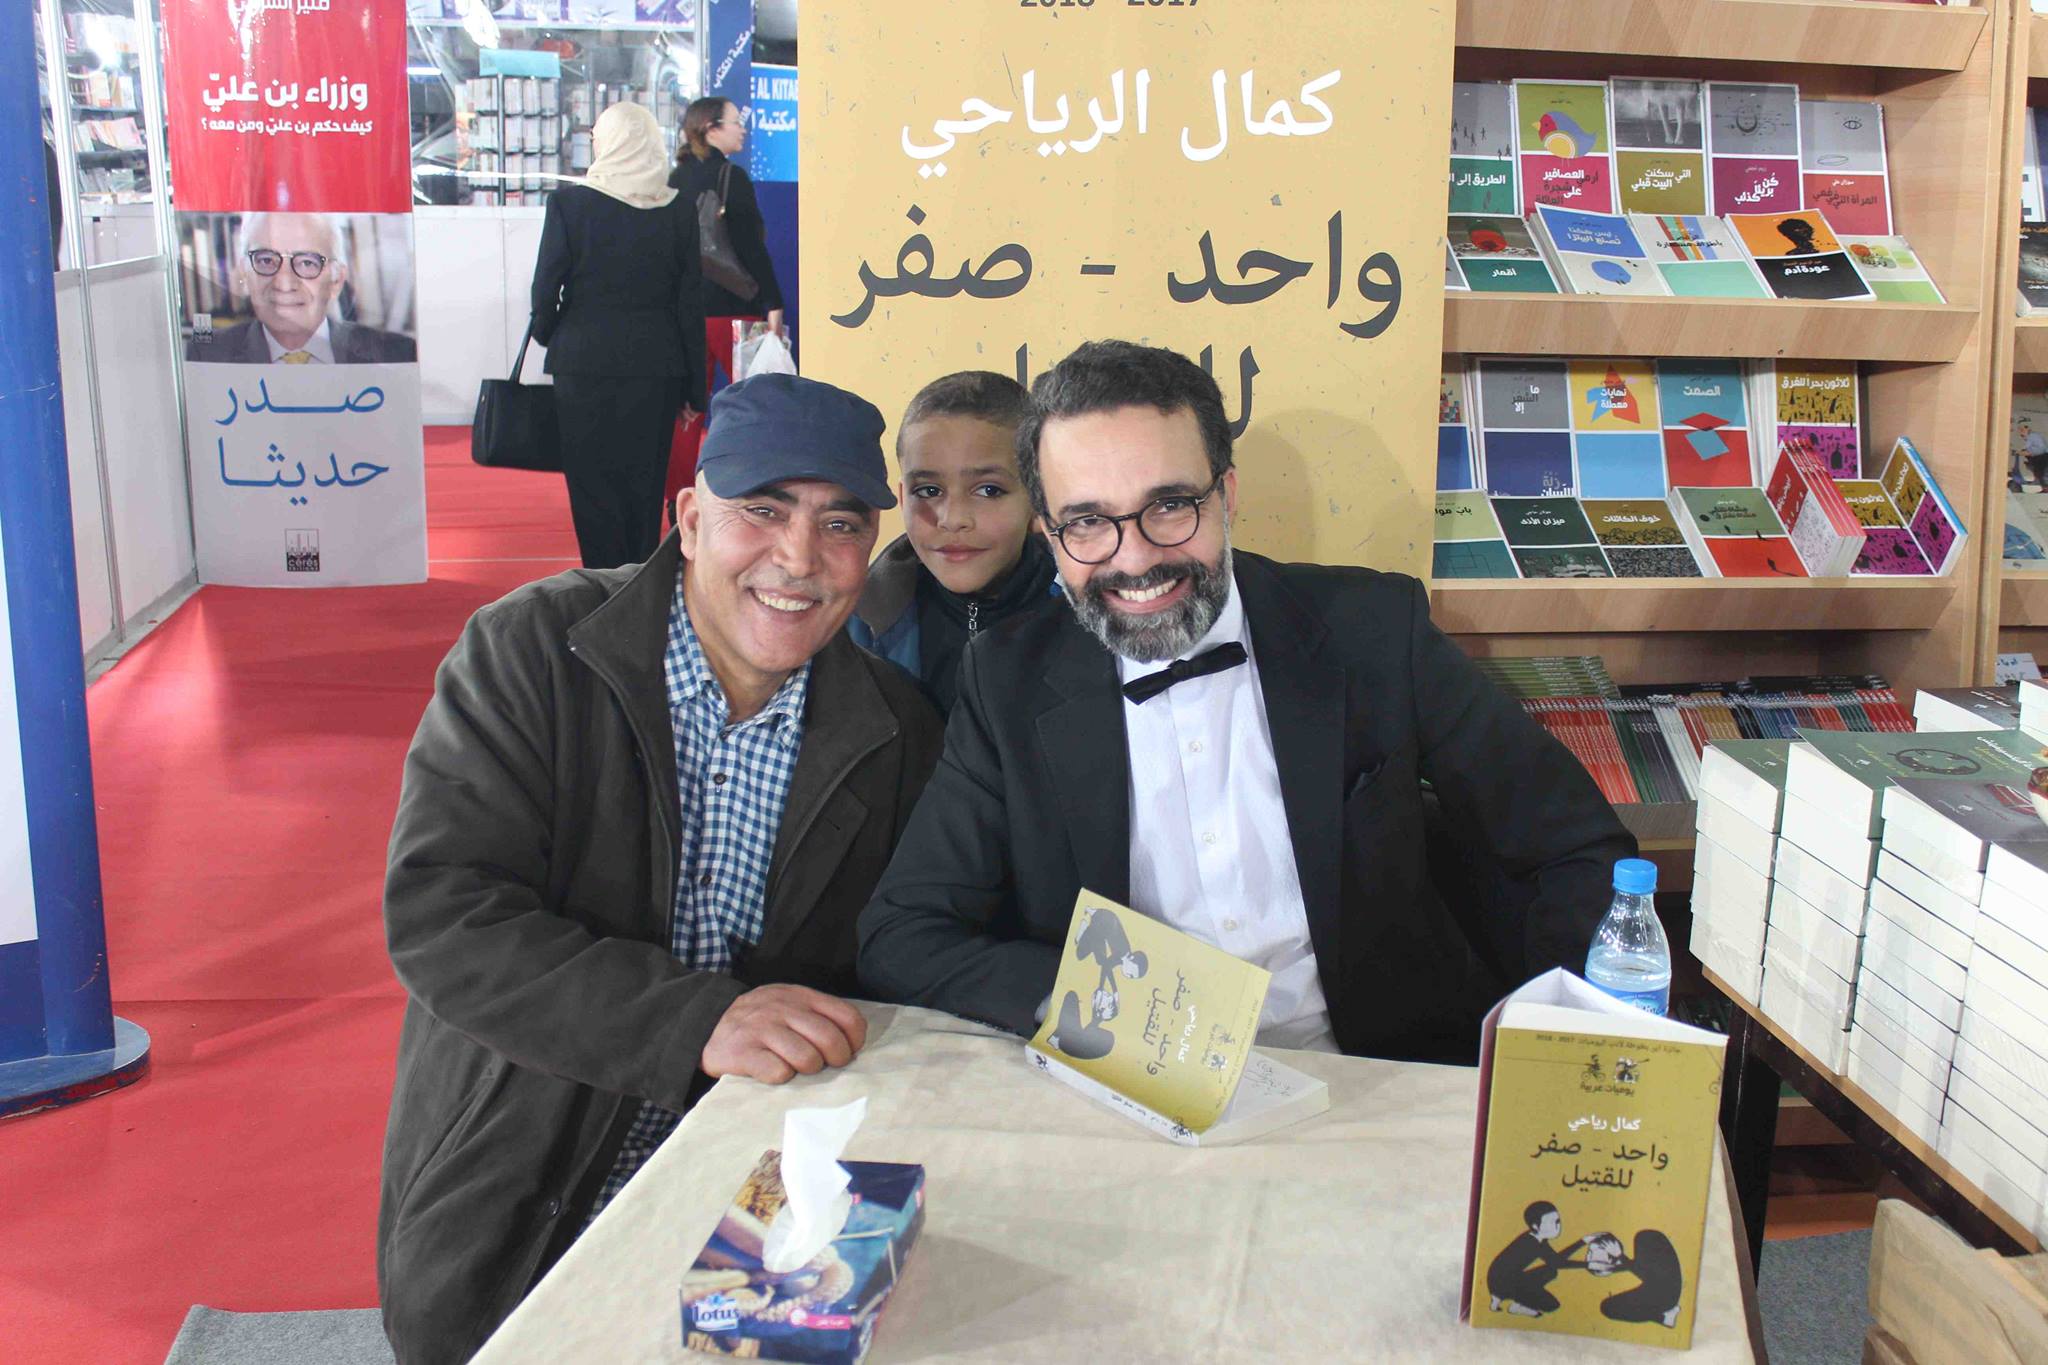 كمال الرياحى يوقع كتابه واحد صفر للقتيل الفائز بجائزة ابن بطوطة فى معرض تونس (33)